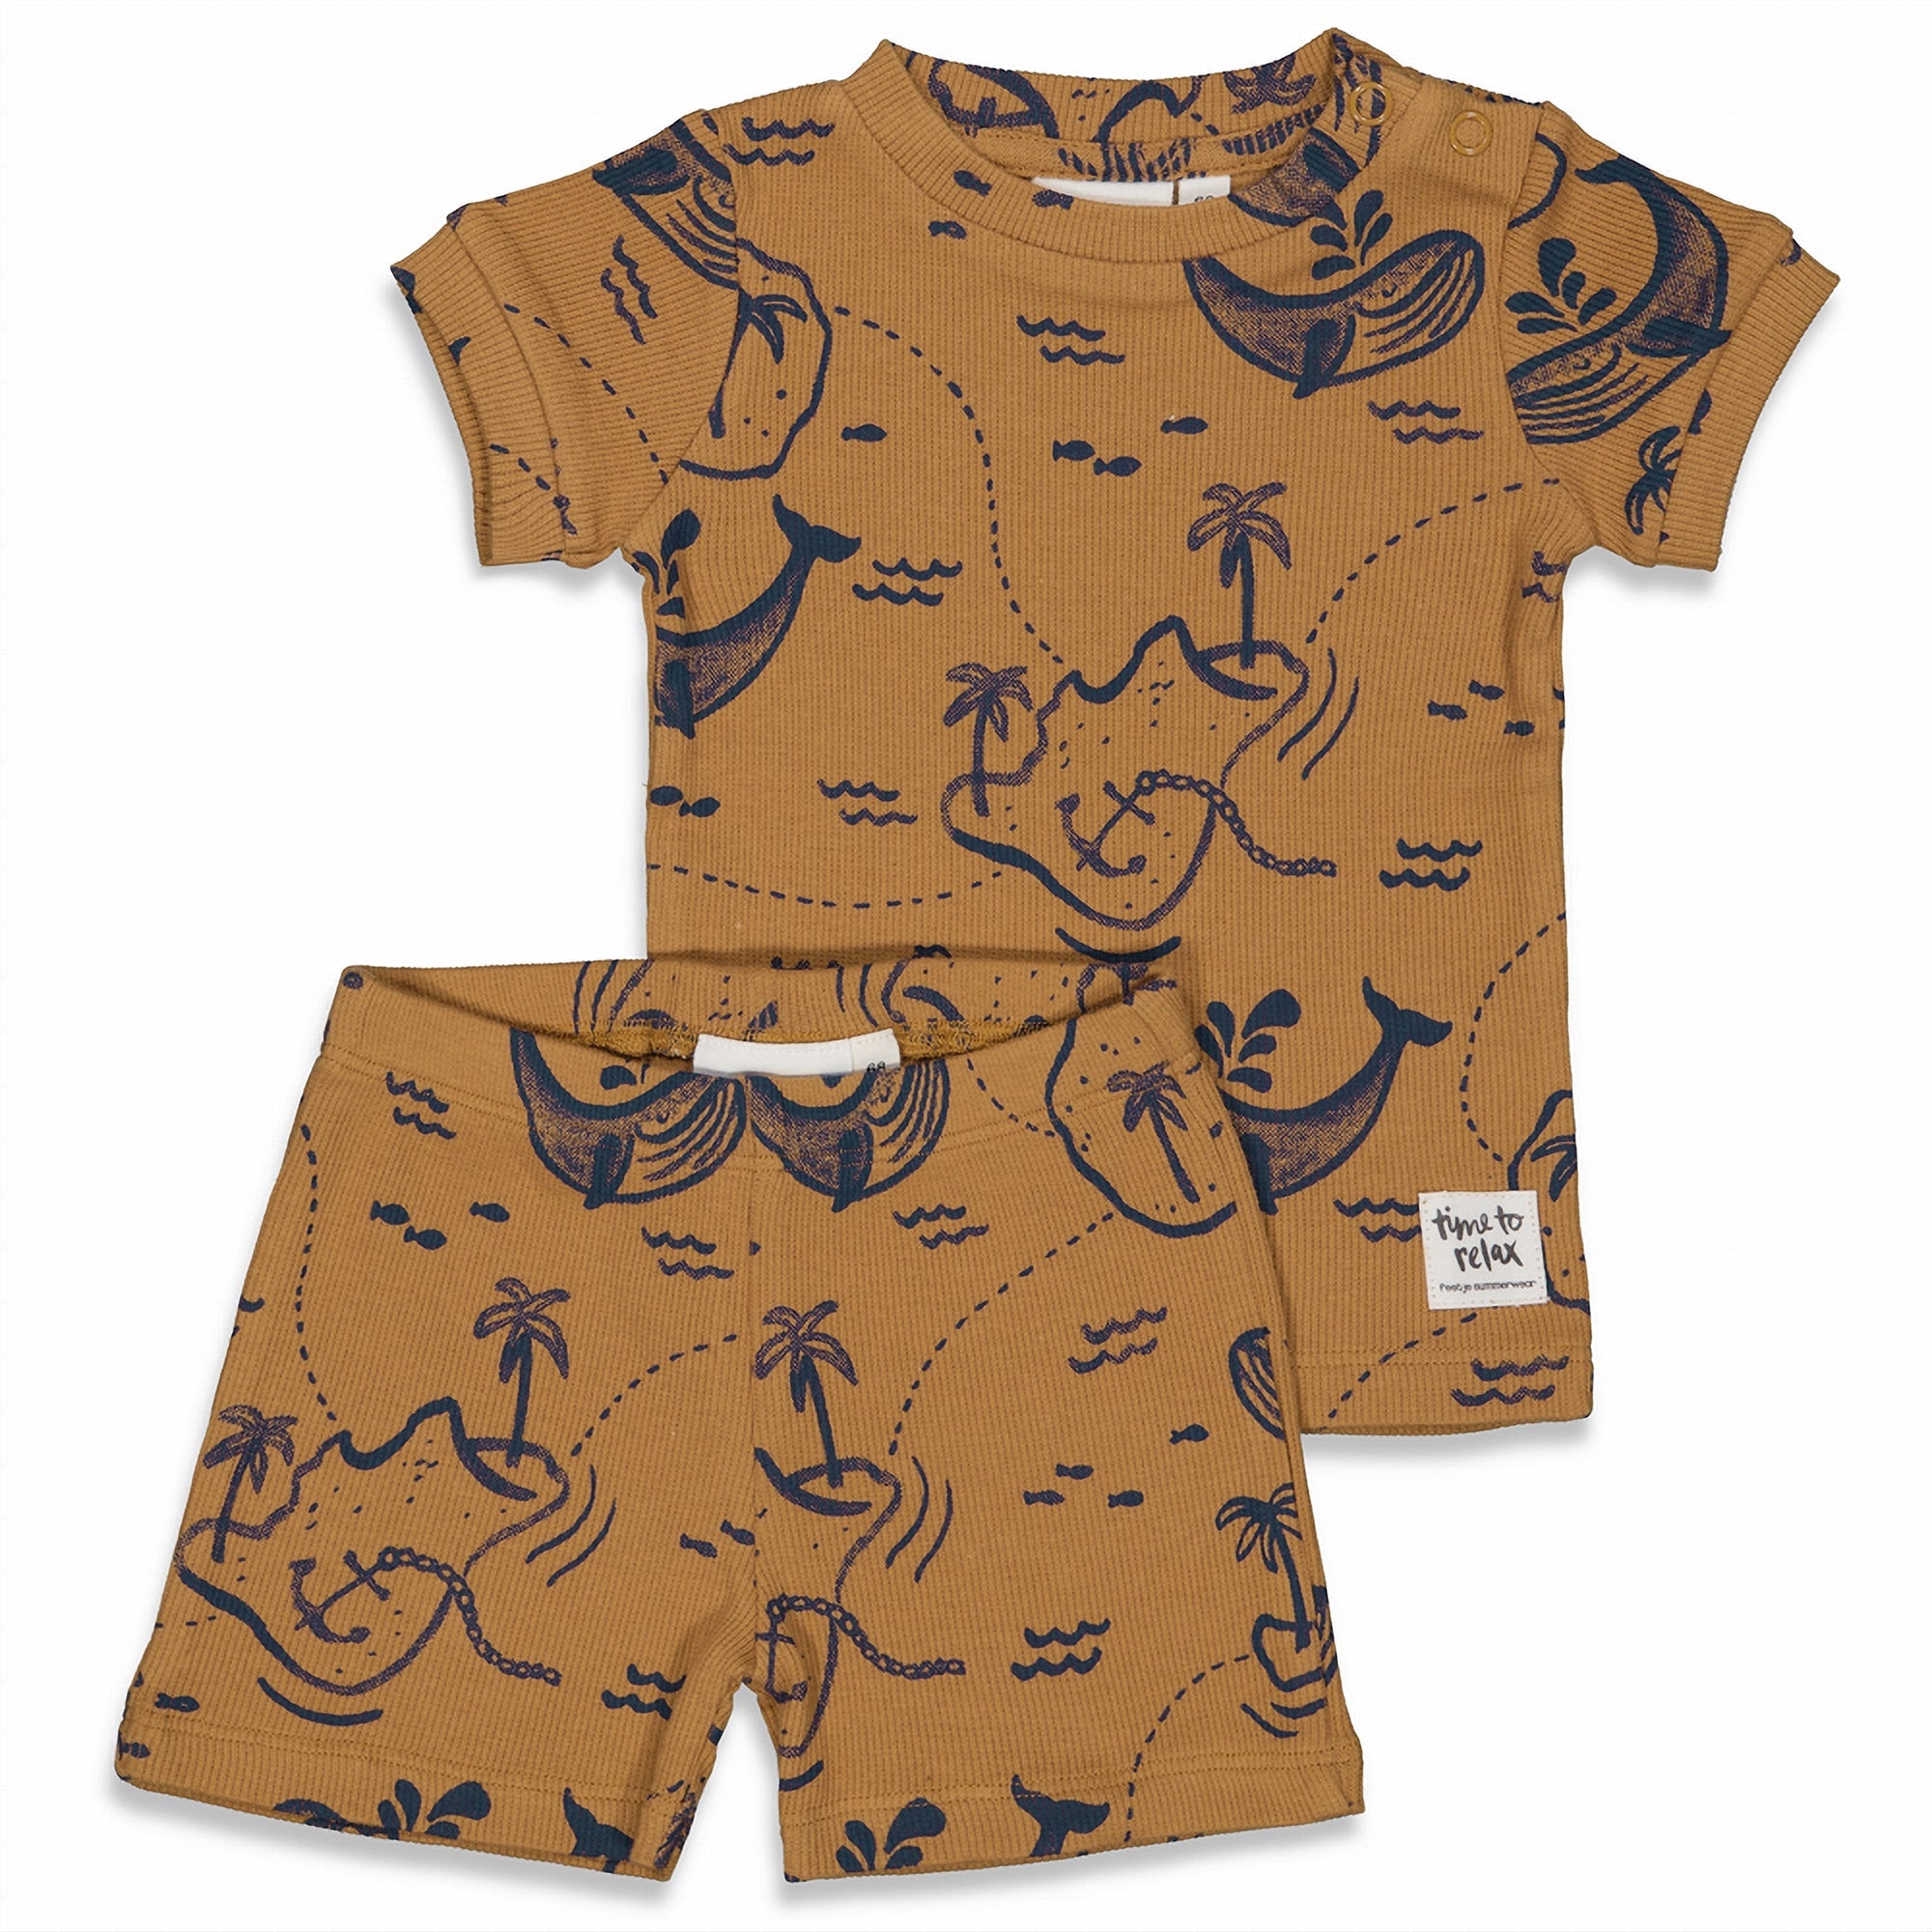 Jongens Wally Whale - Premium Summerwear by FEETJE van Feetje in de kleur Camel in maat 152.